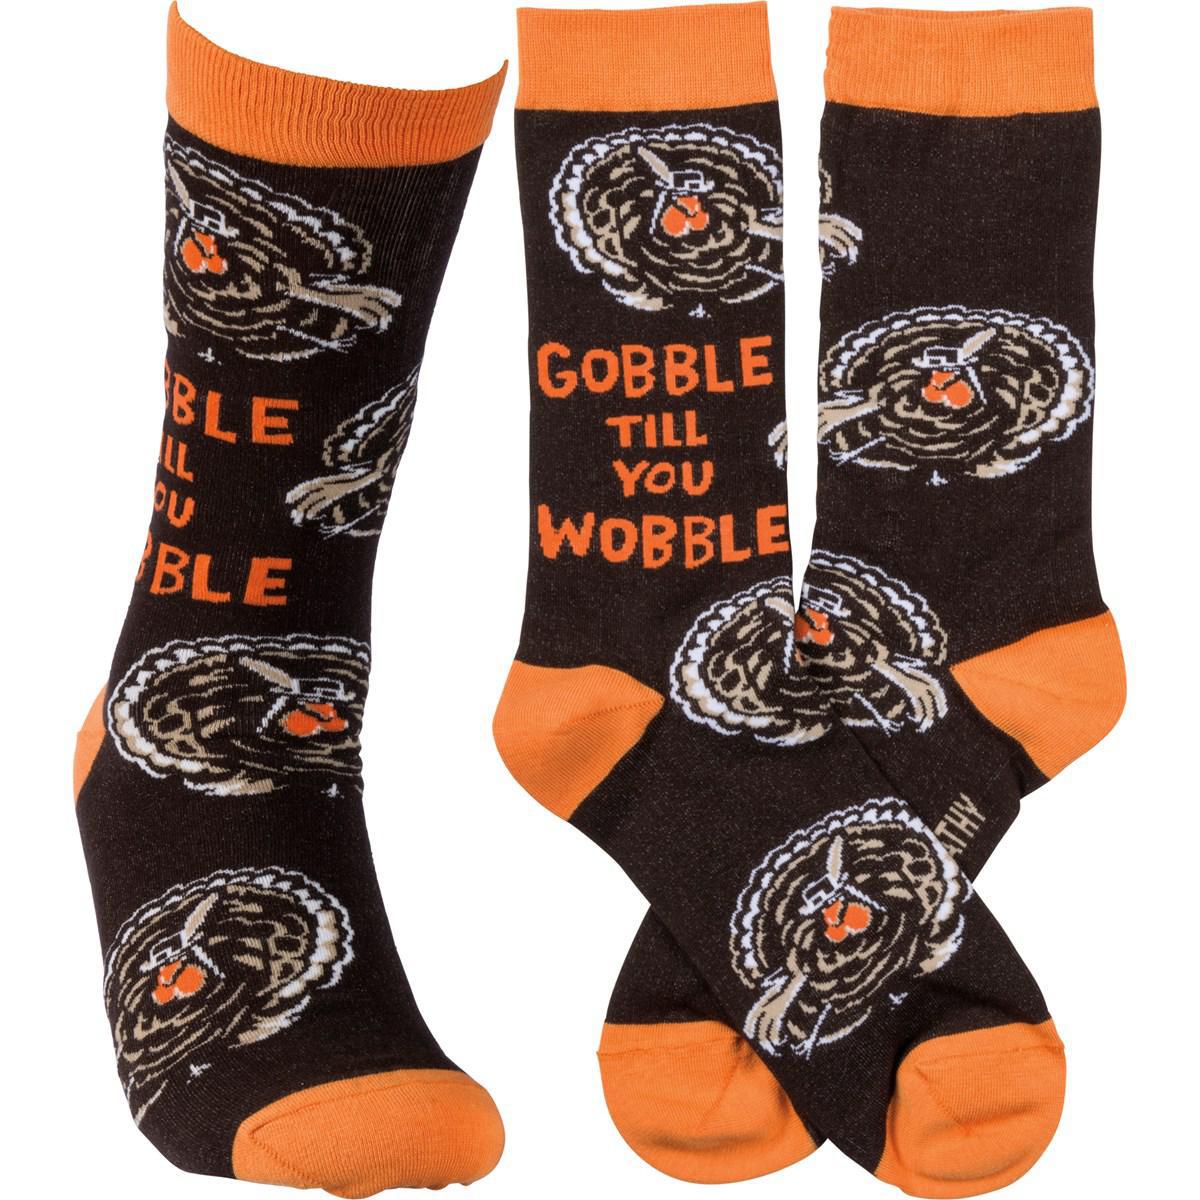 Gobble Till You Wobble Socks